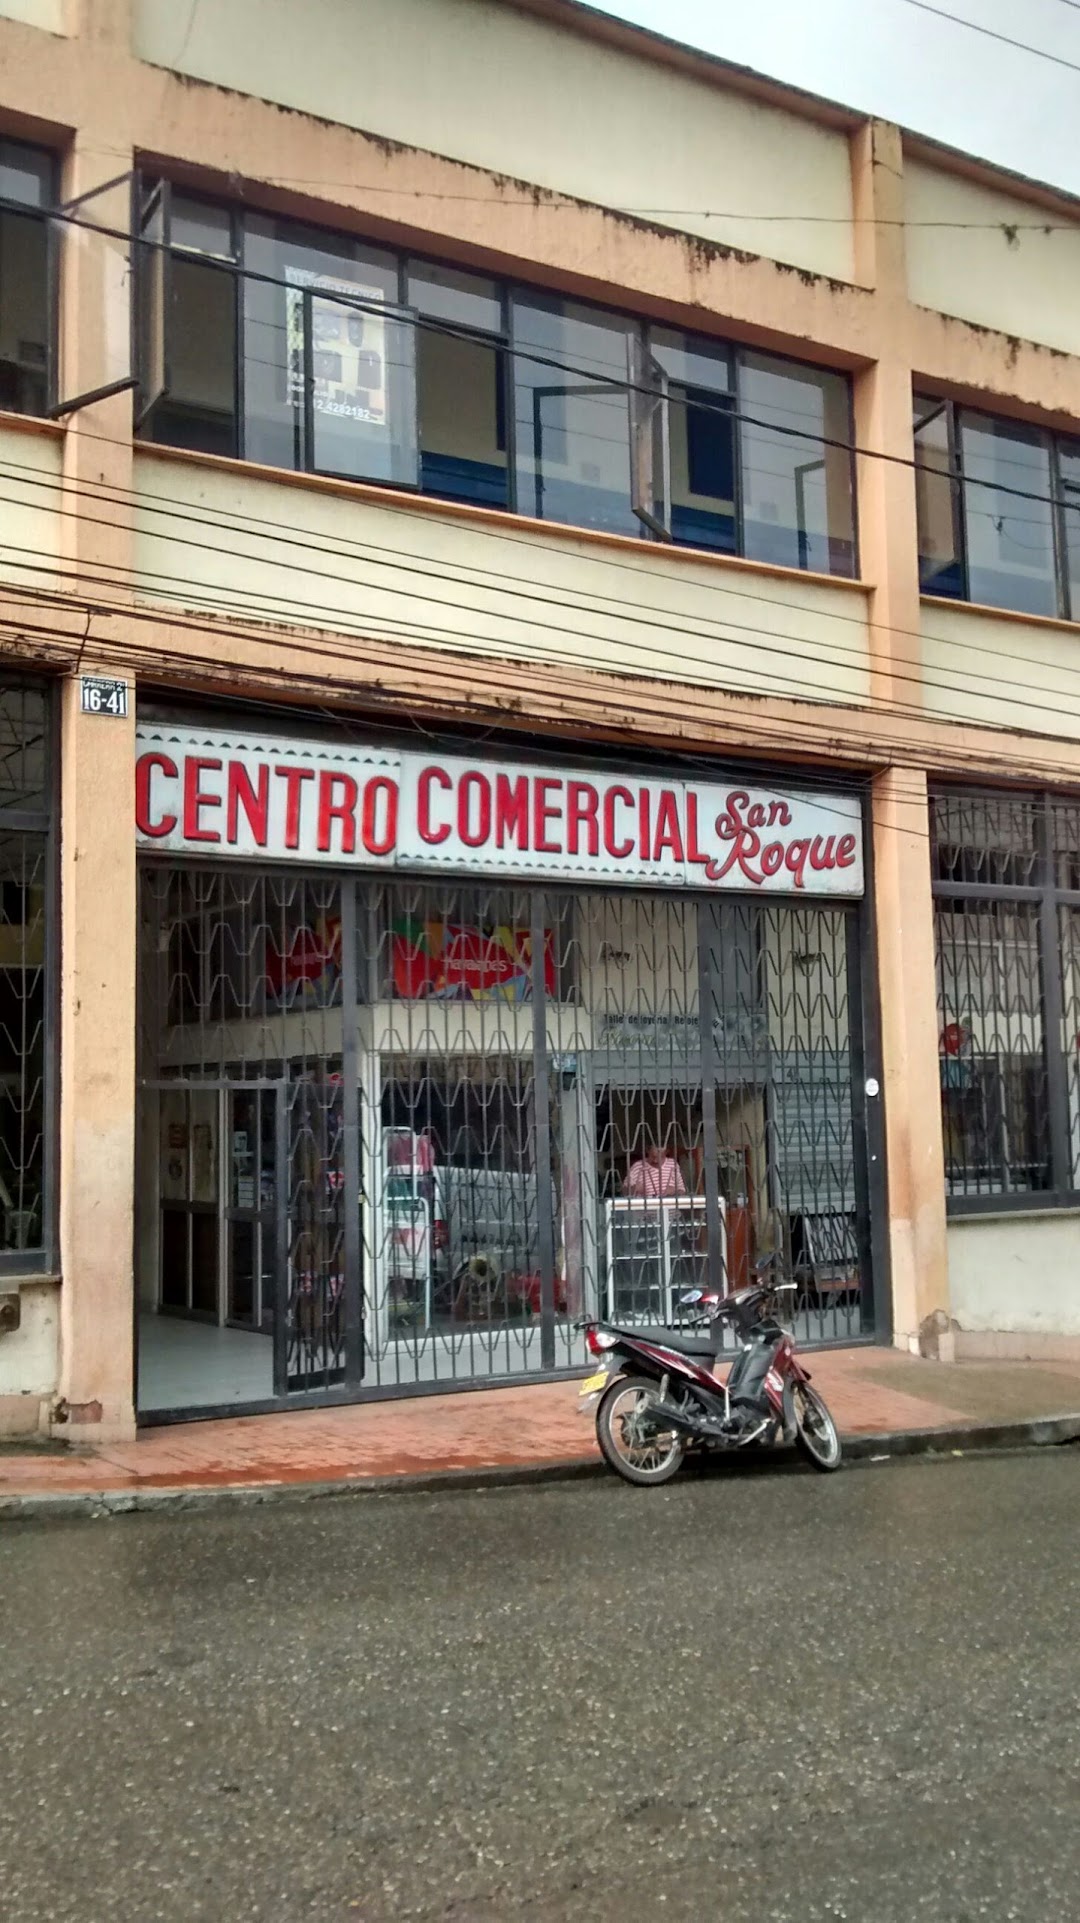 Centro Comercial San Roque